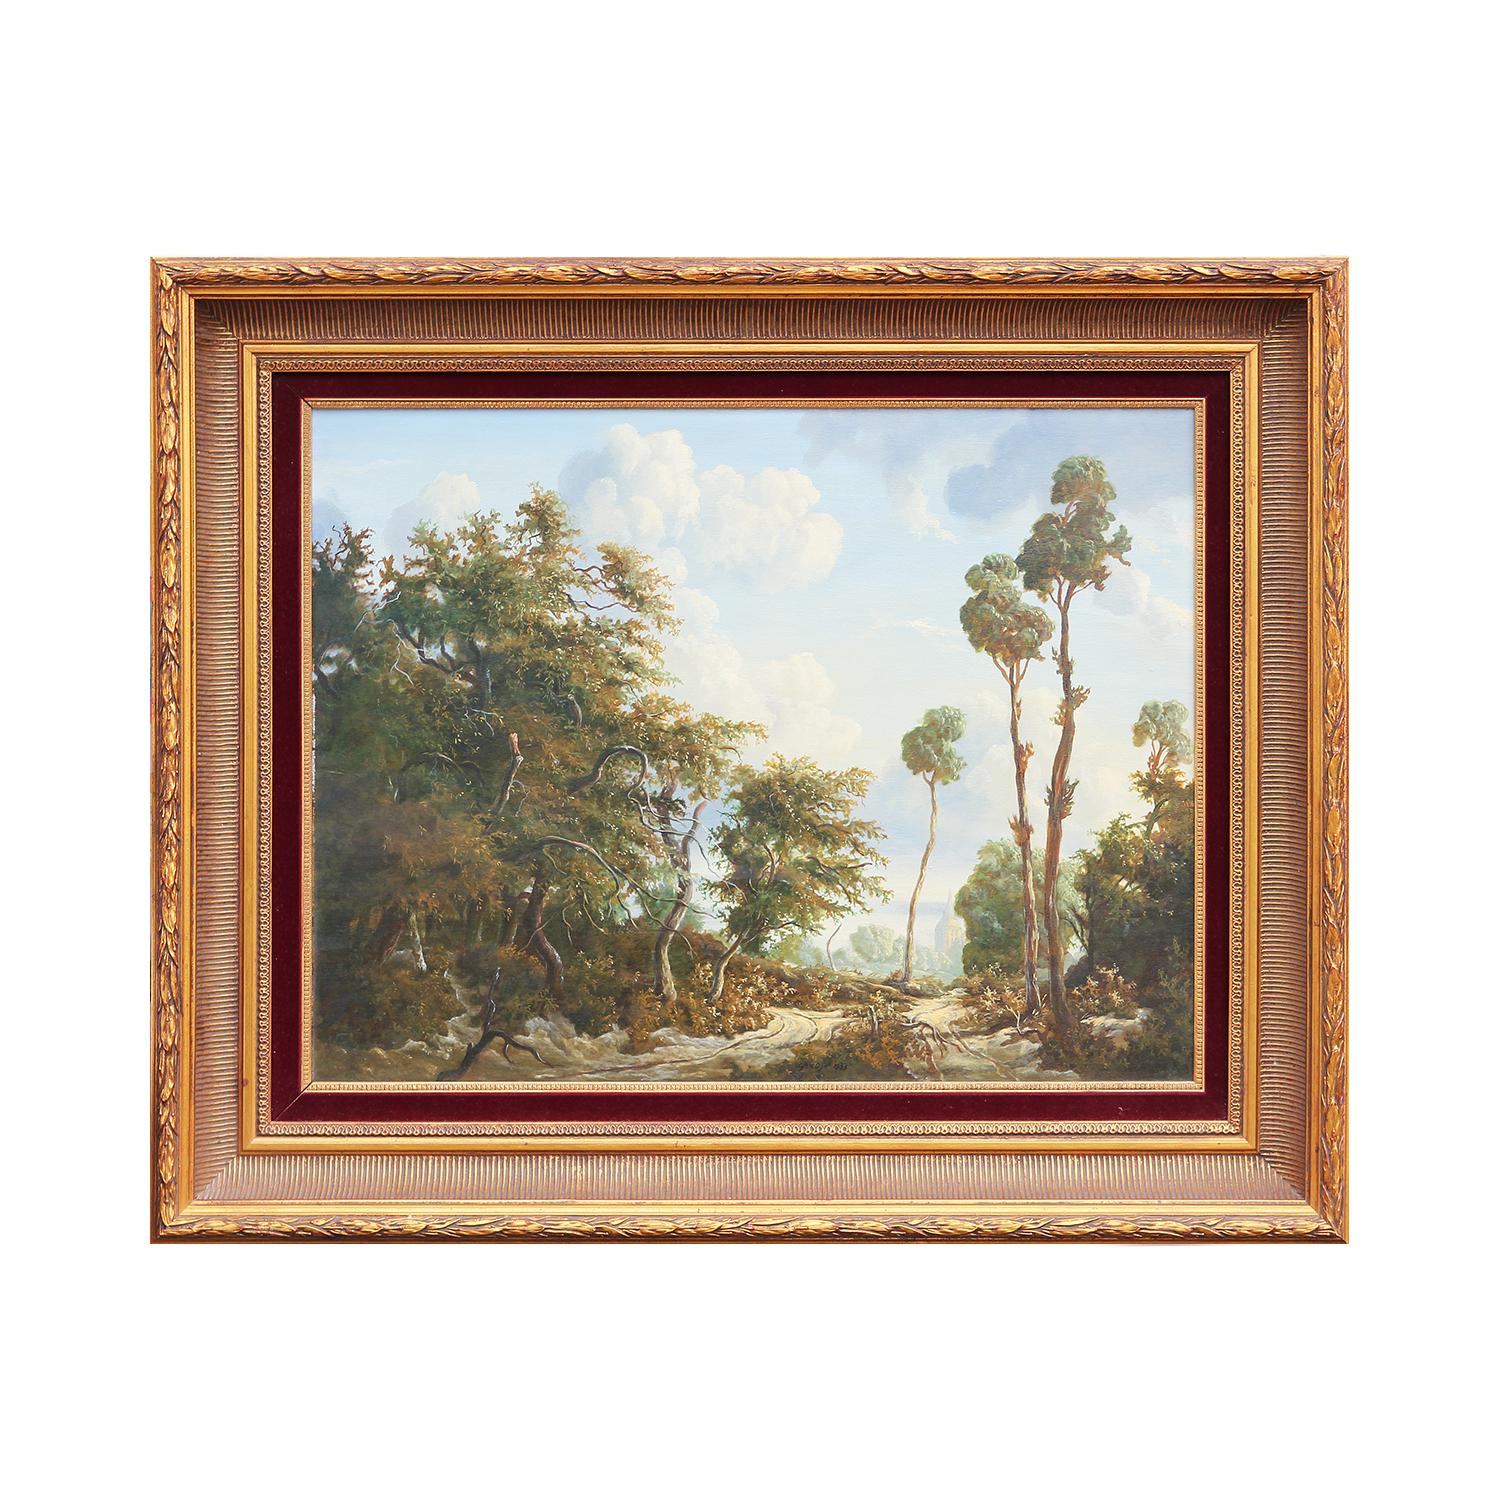 Sublime peinture de paysage pittoresque en forêt hollandaise de style naturaliste et romantique - Painting de Cja. V. Dijk